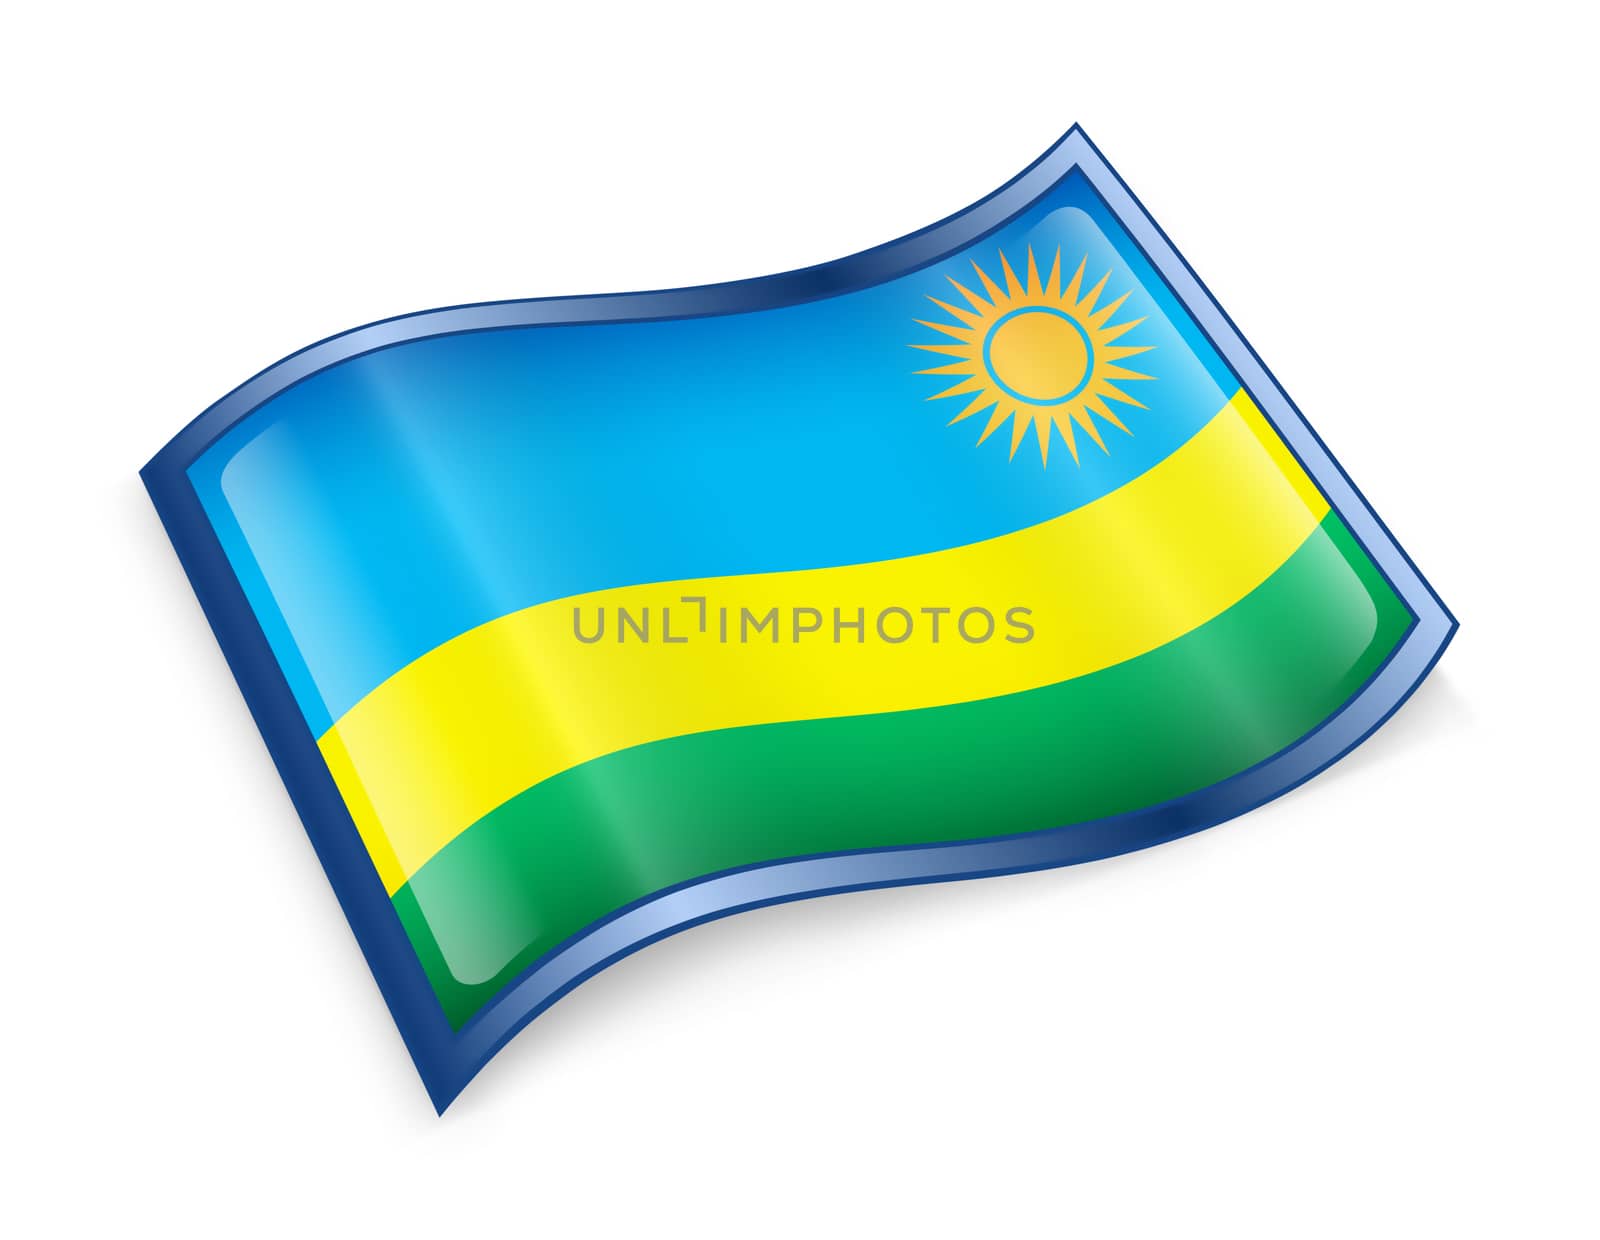 Rwandan flag icon. by zeffss